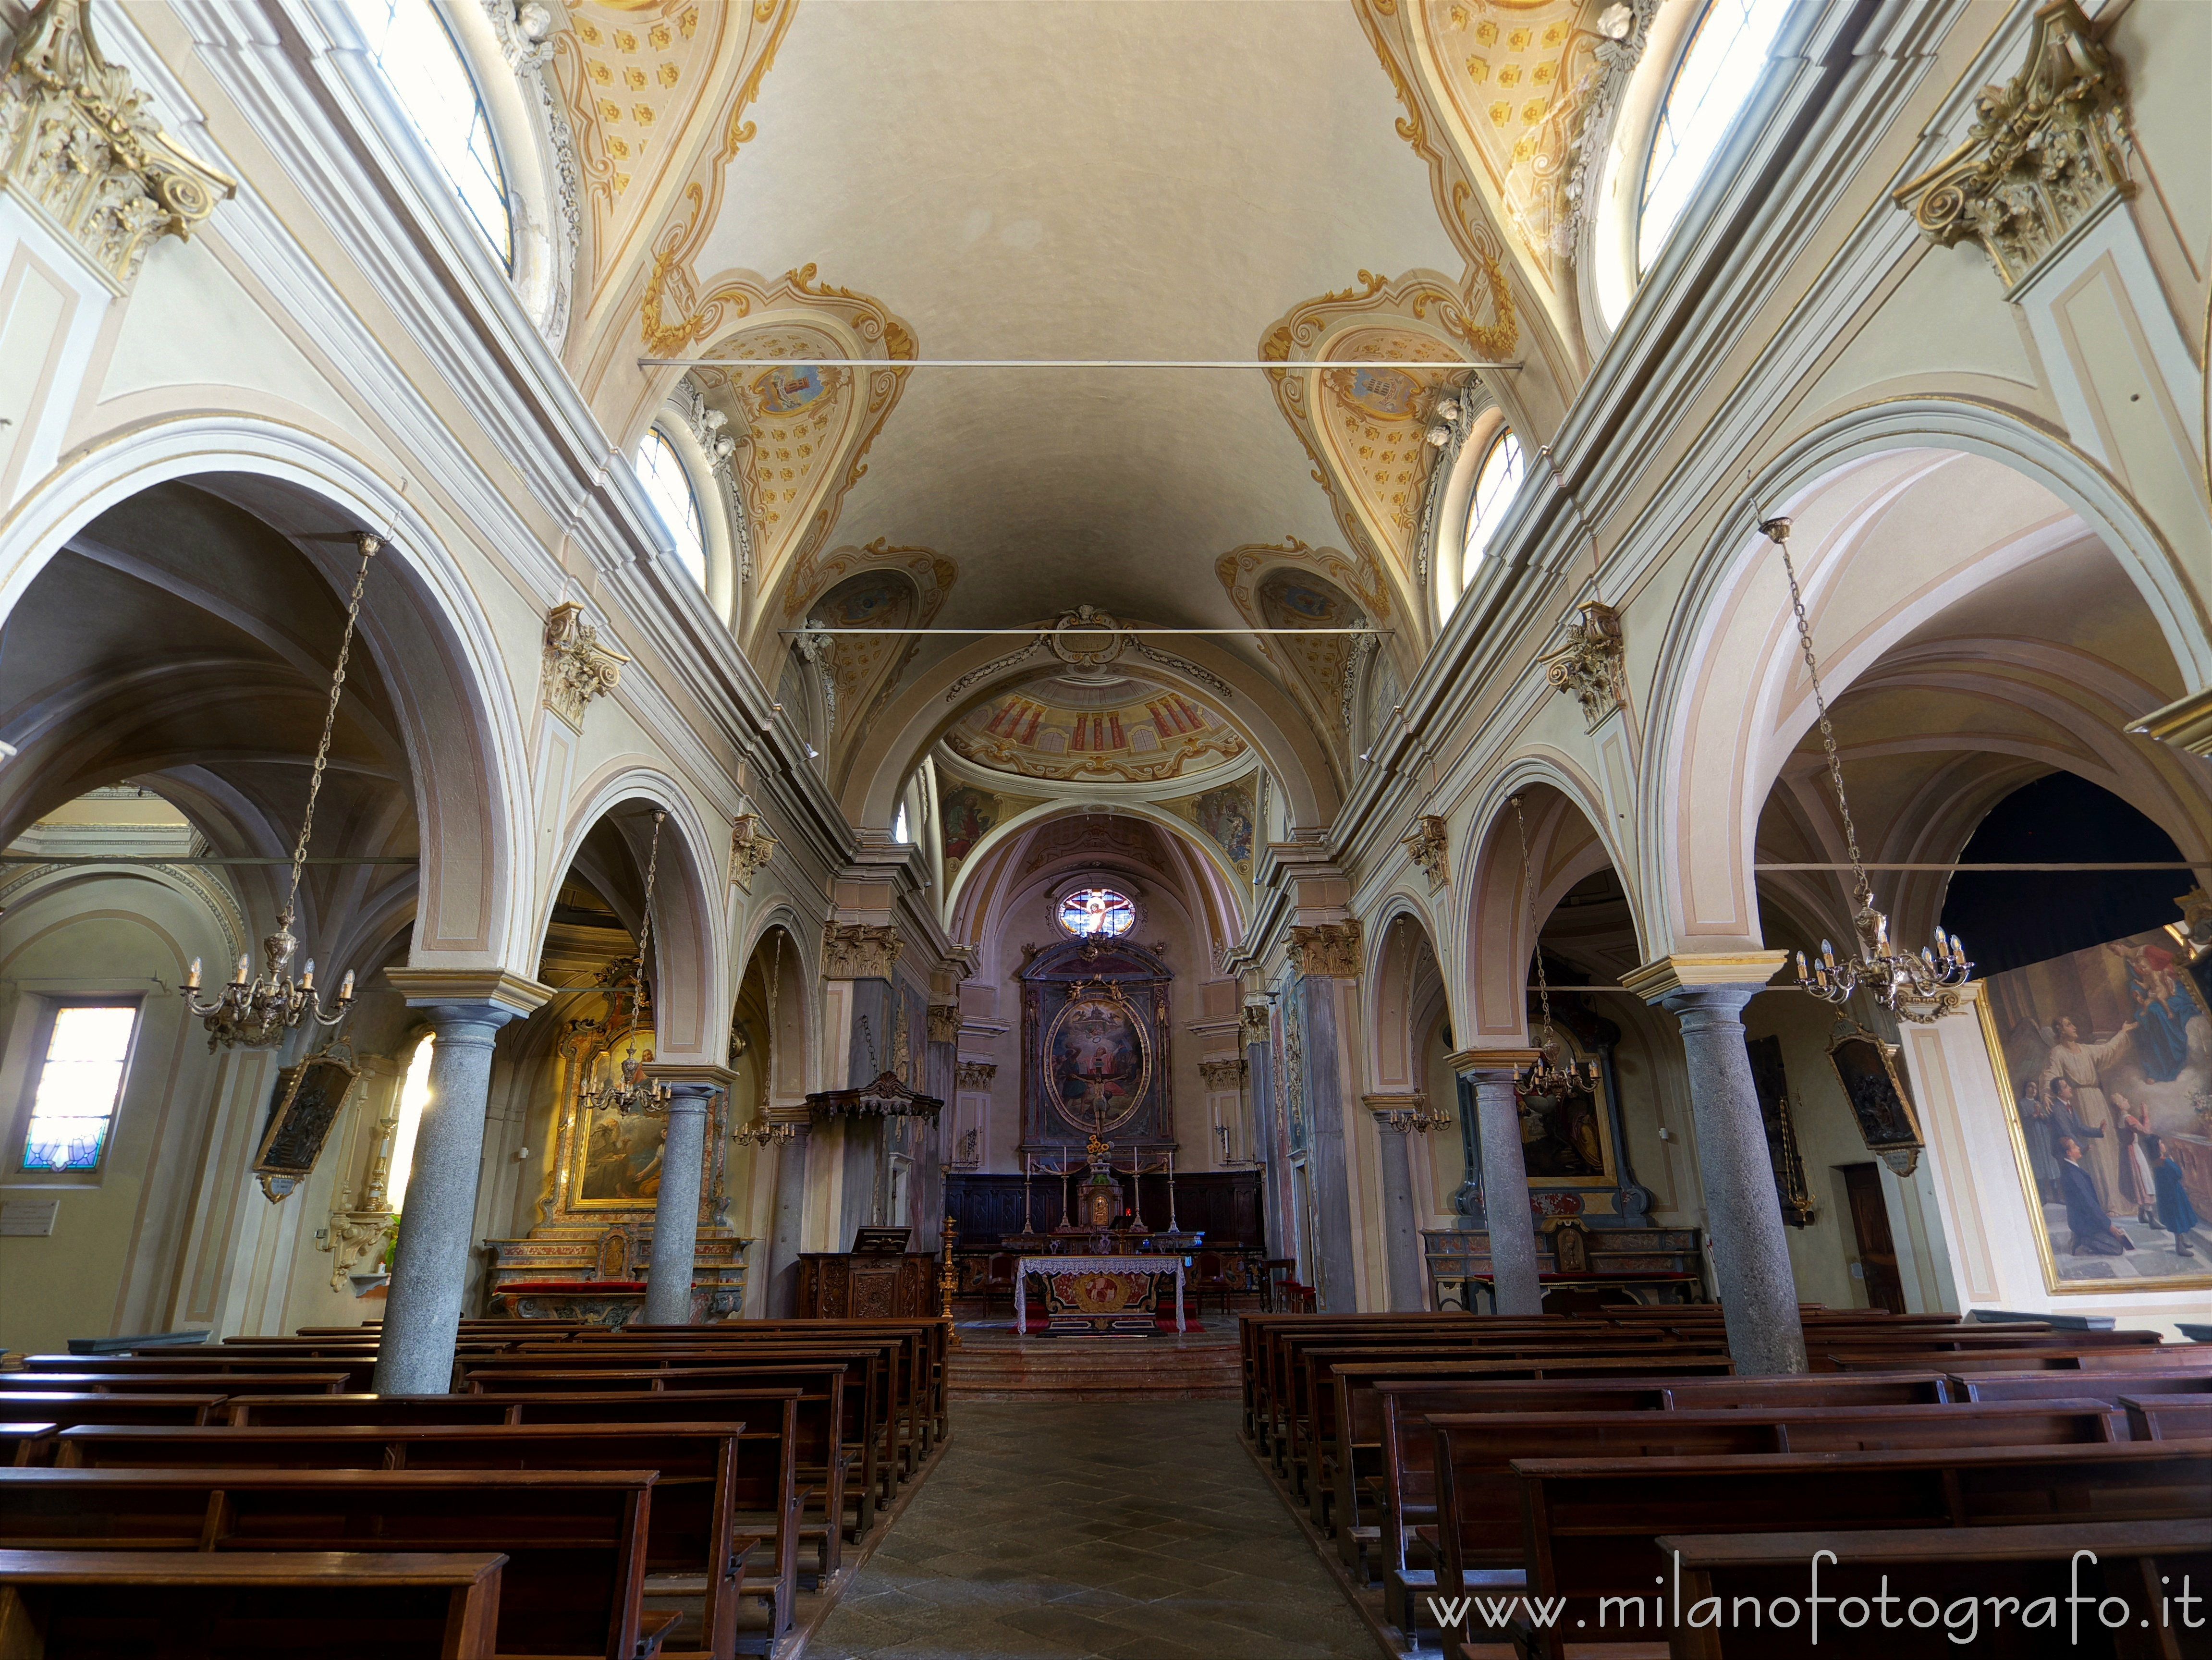 Occhieppo Superiore (Biella, Italy): Interior of the Church of Santo Stefano - Occhieppo Superiore (Biella, Italy)